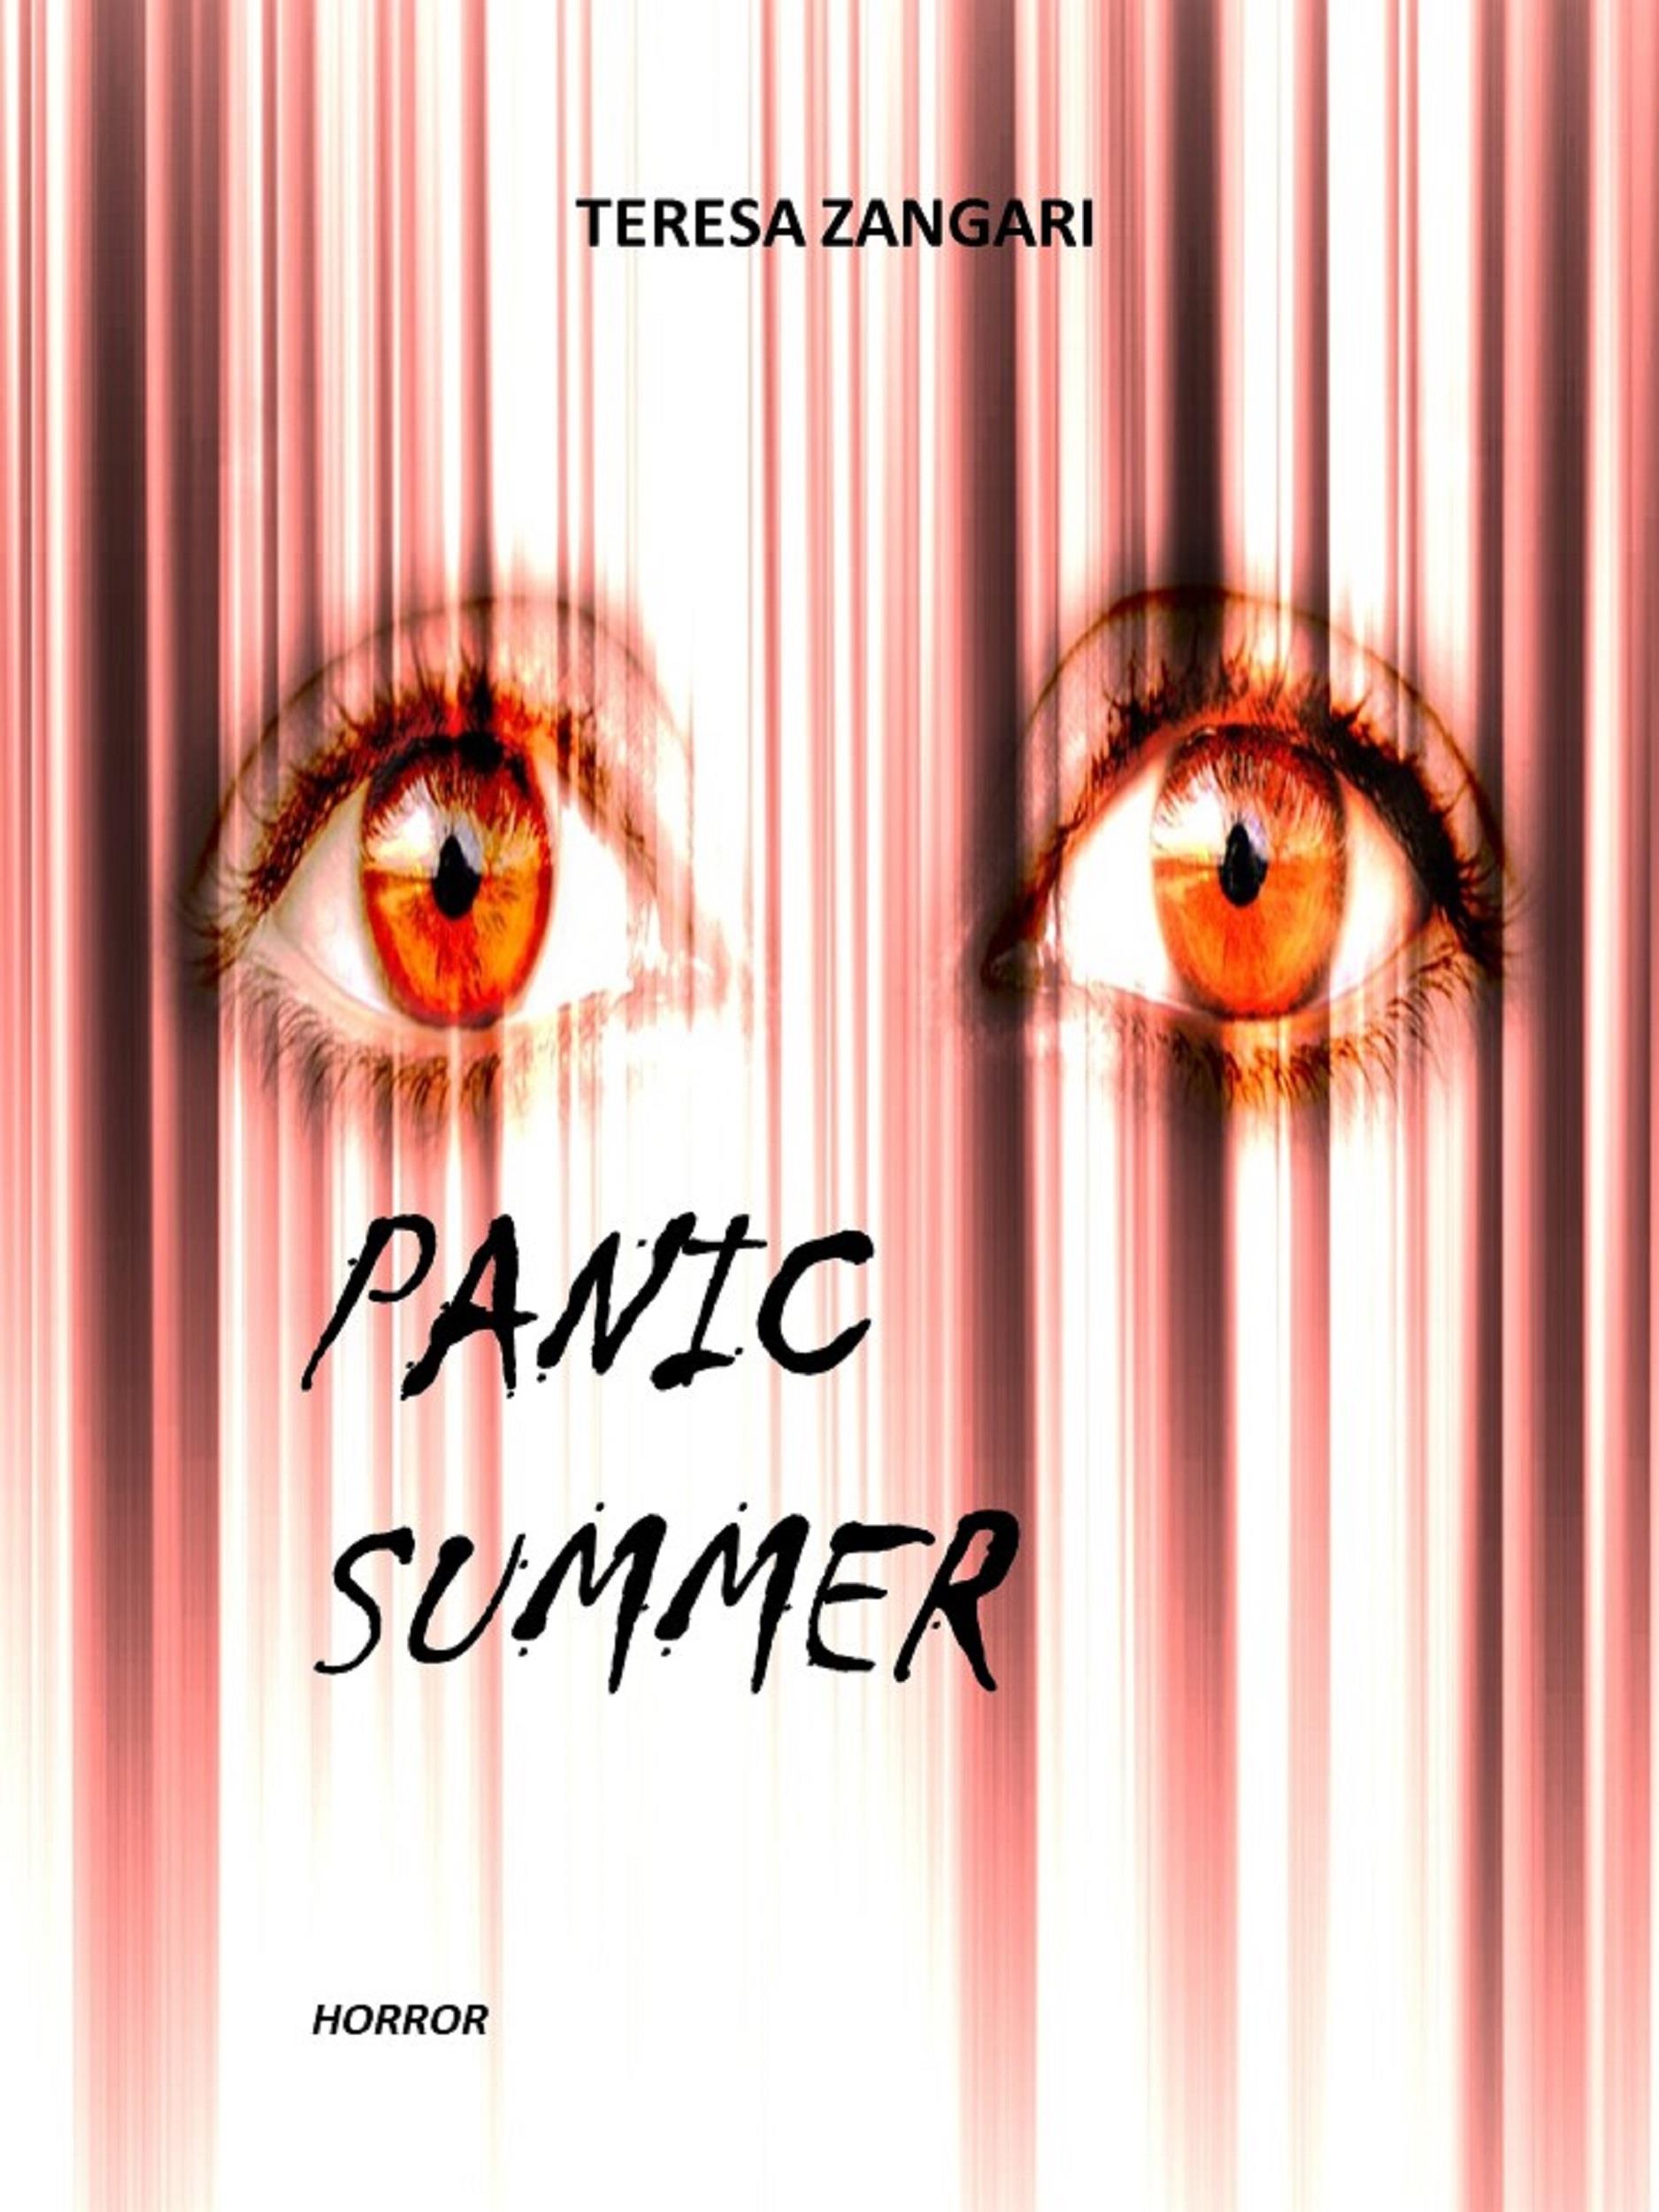 Panic summer